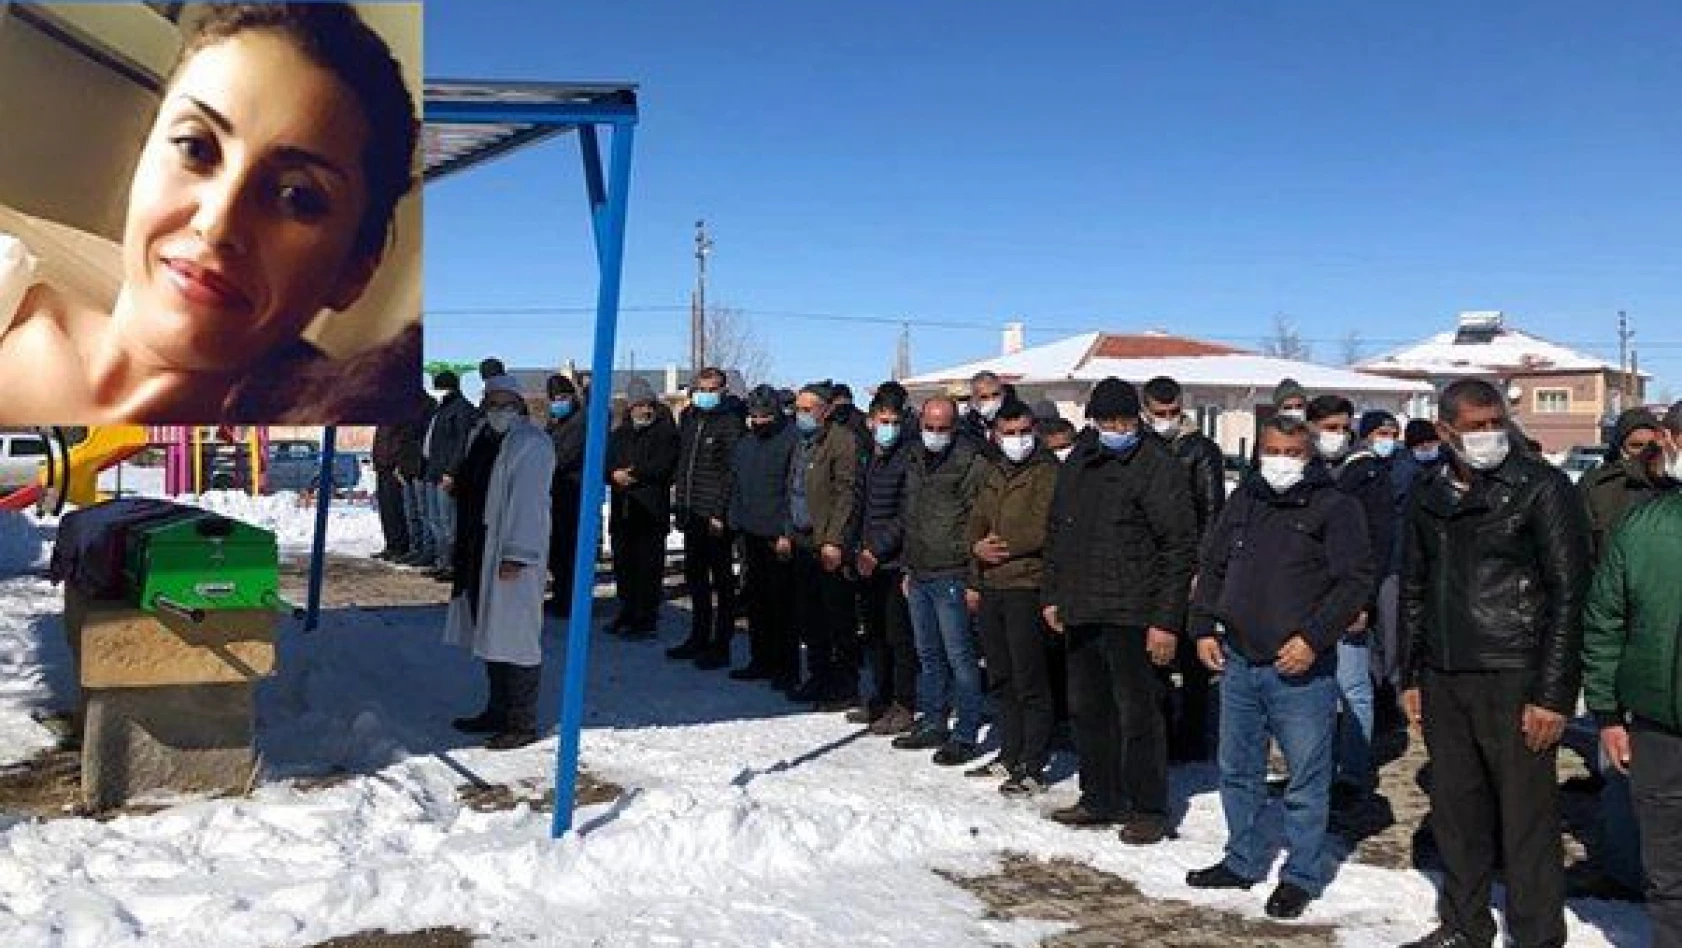  İş arkadaşı tarafından öldürülen kadın Kayseri'de toprağa verildi